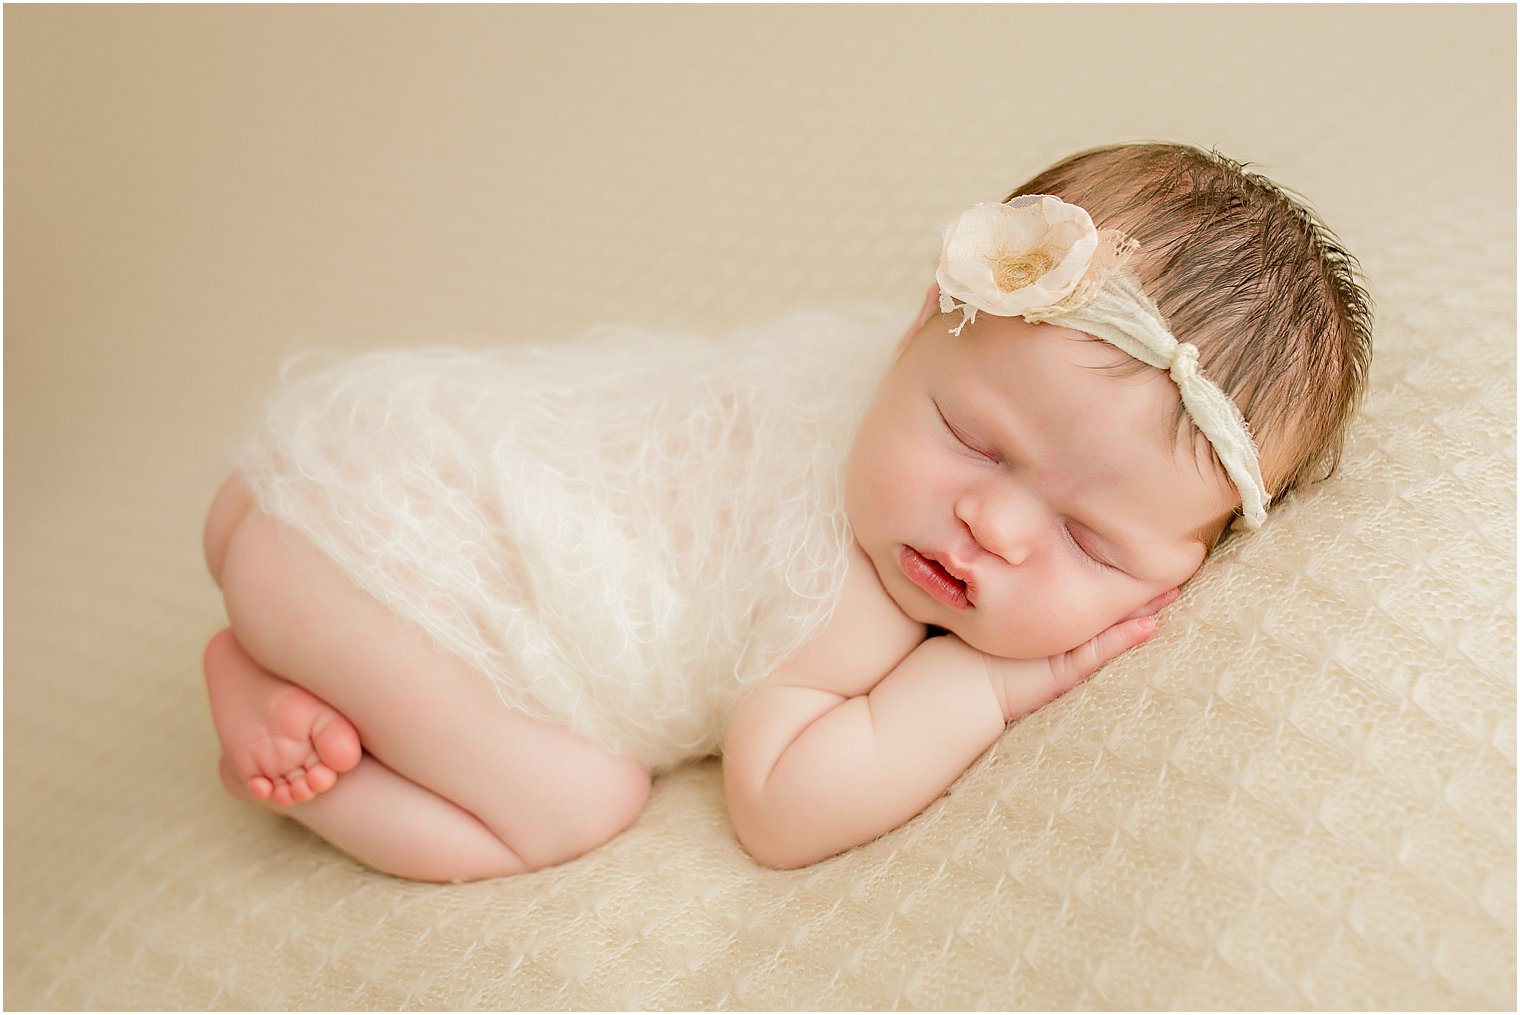 Newborn on beige blanket 